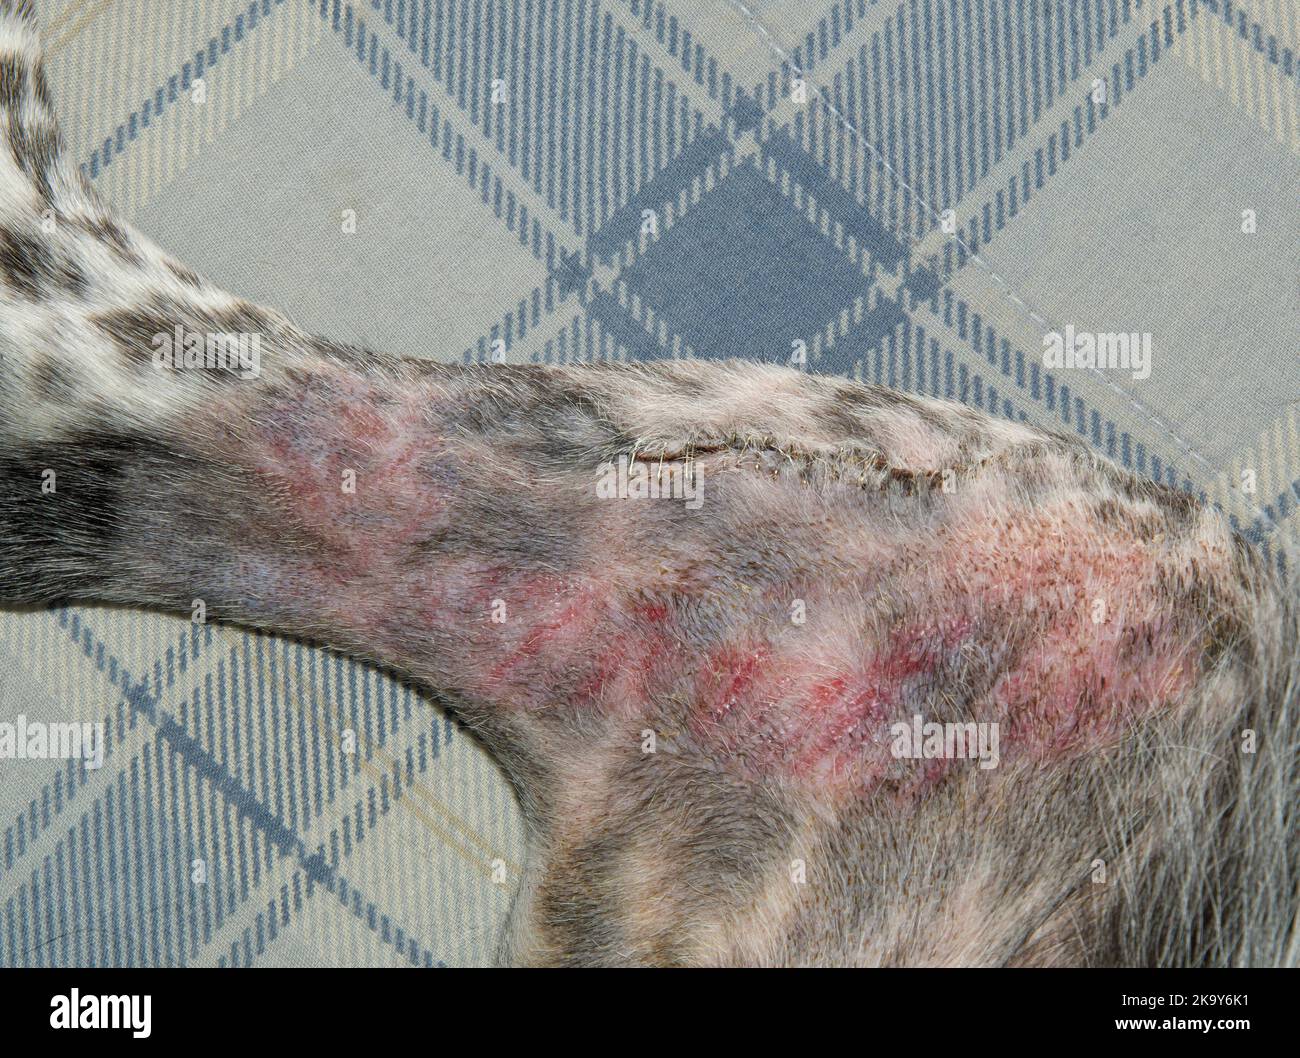 Agrafes métalliques à l'intérieur du genou et de la jambe d'un chien après une chirurgie de TPLO, avec incision la plupart du temps guérie. Marques rouges sur la peau causées par l'adhérence du bandag Banque D'Images